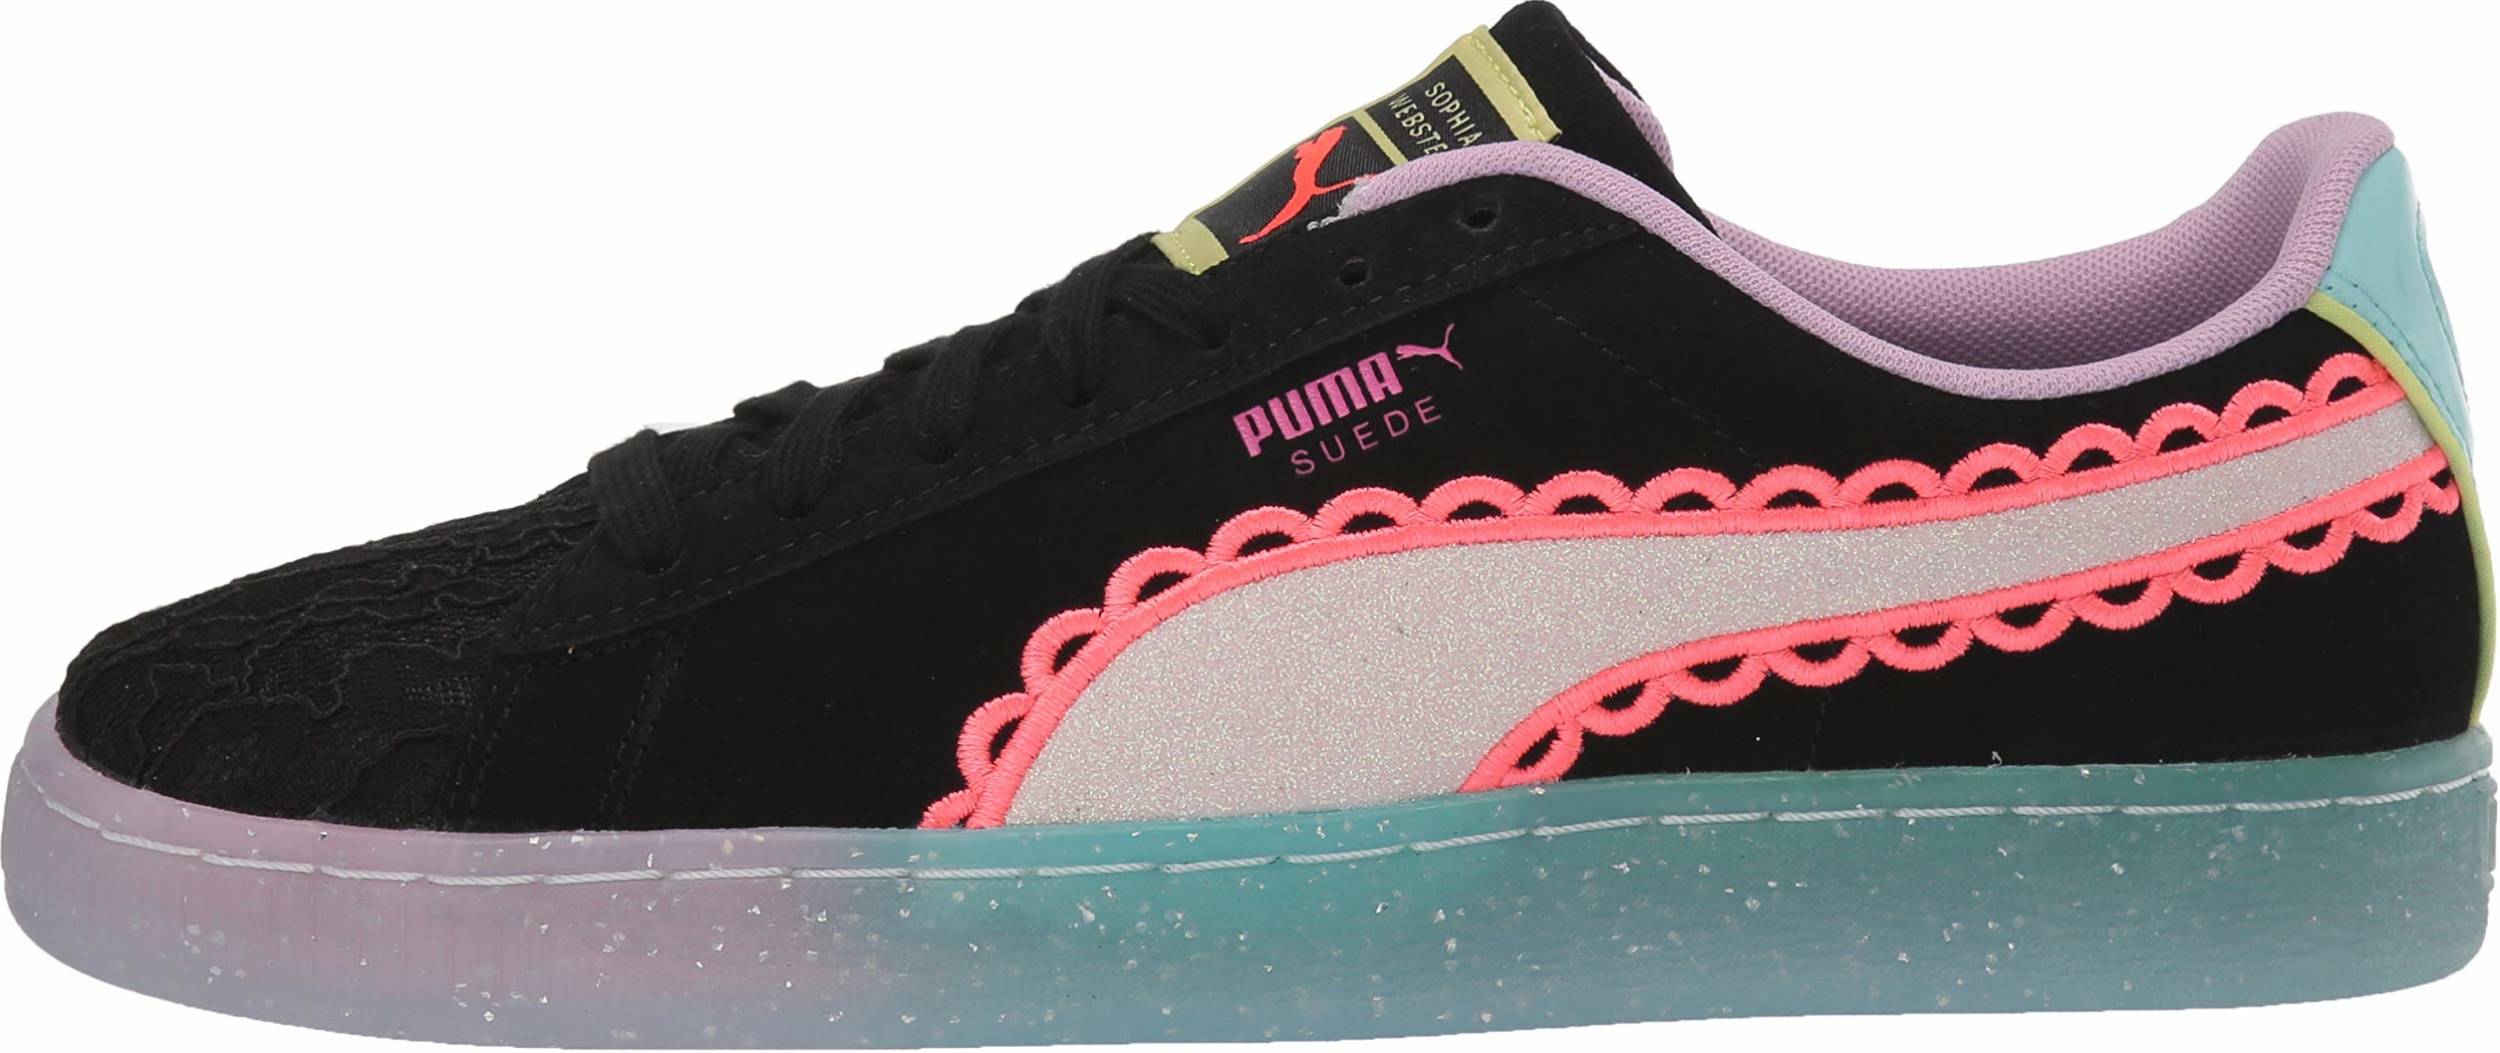 puma sophia webster shoes